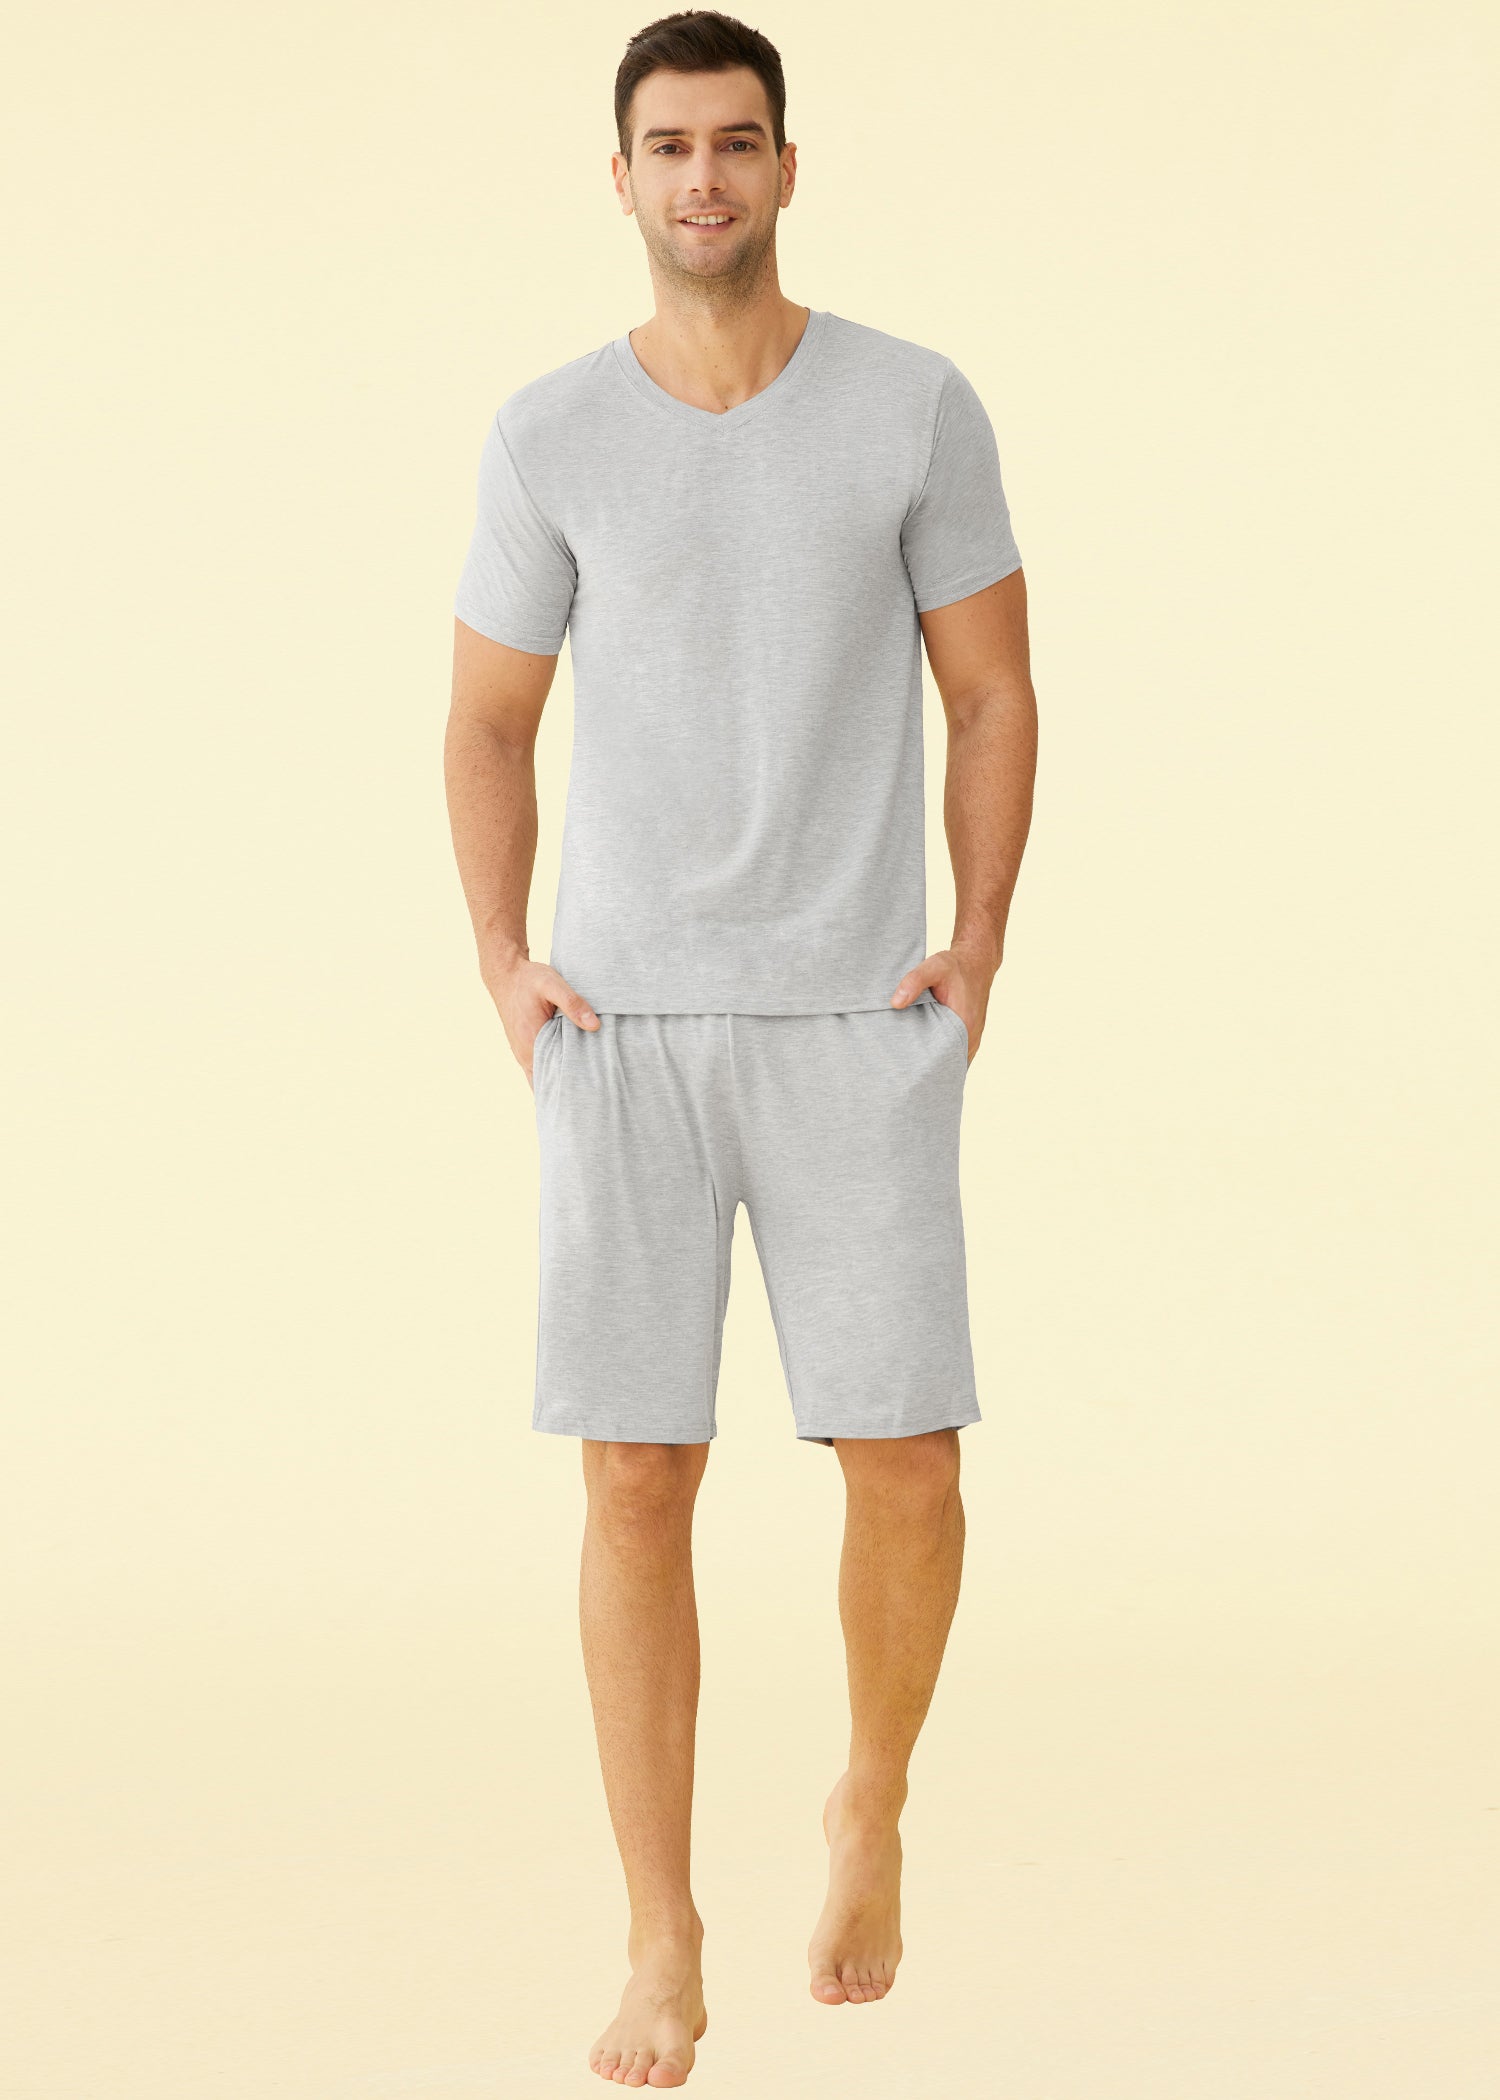 Men's Cotton Woven Short Sleepwear Pajama Set – Latuza